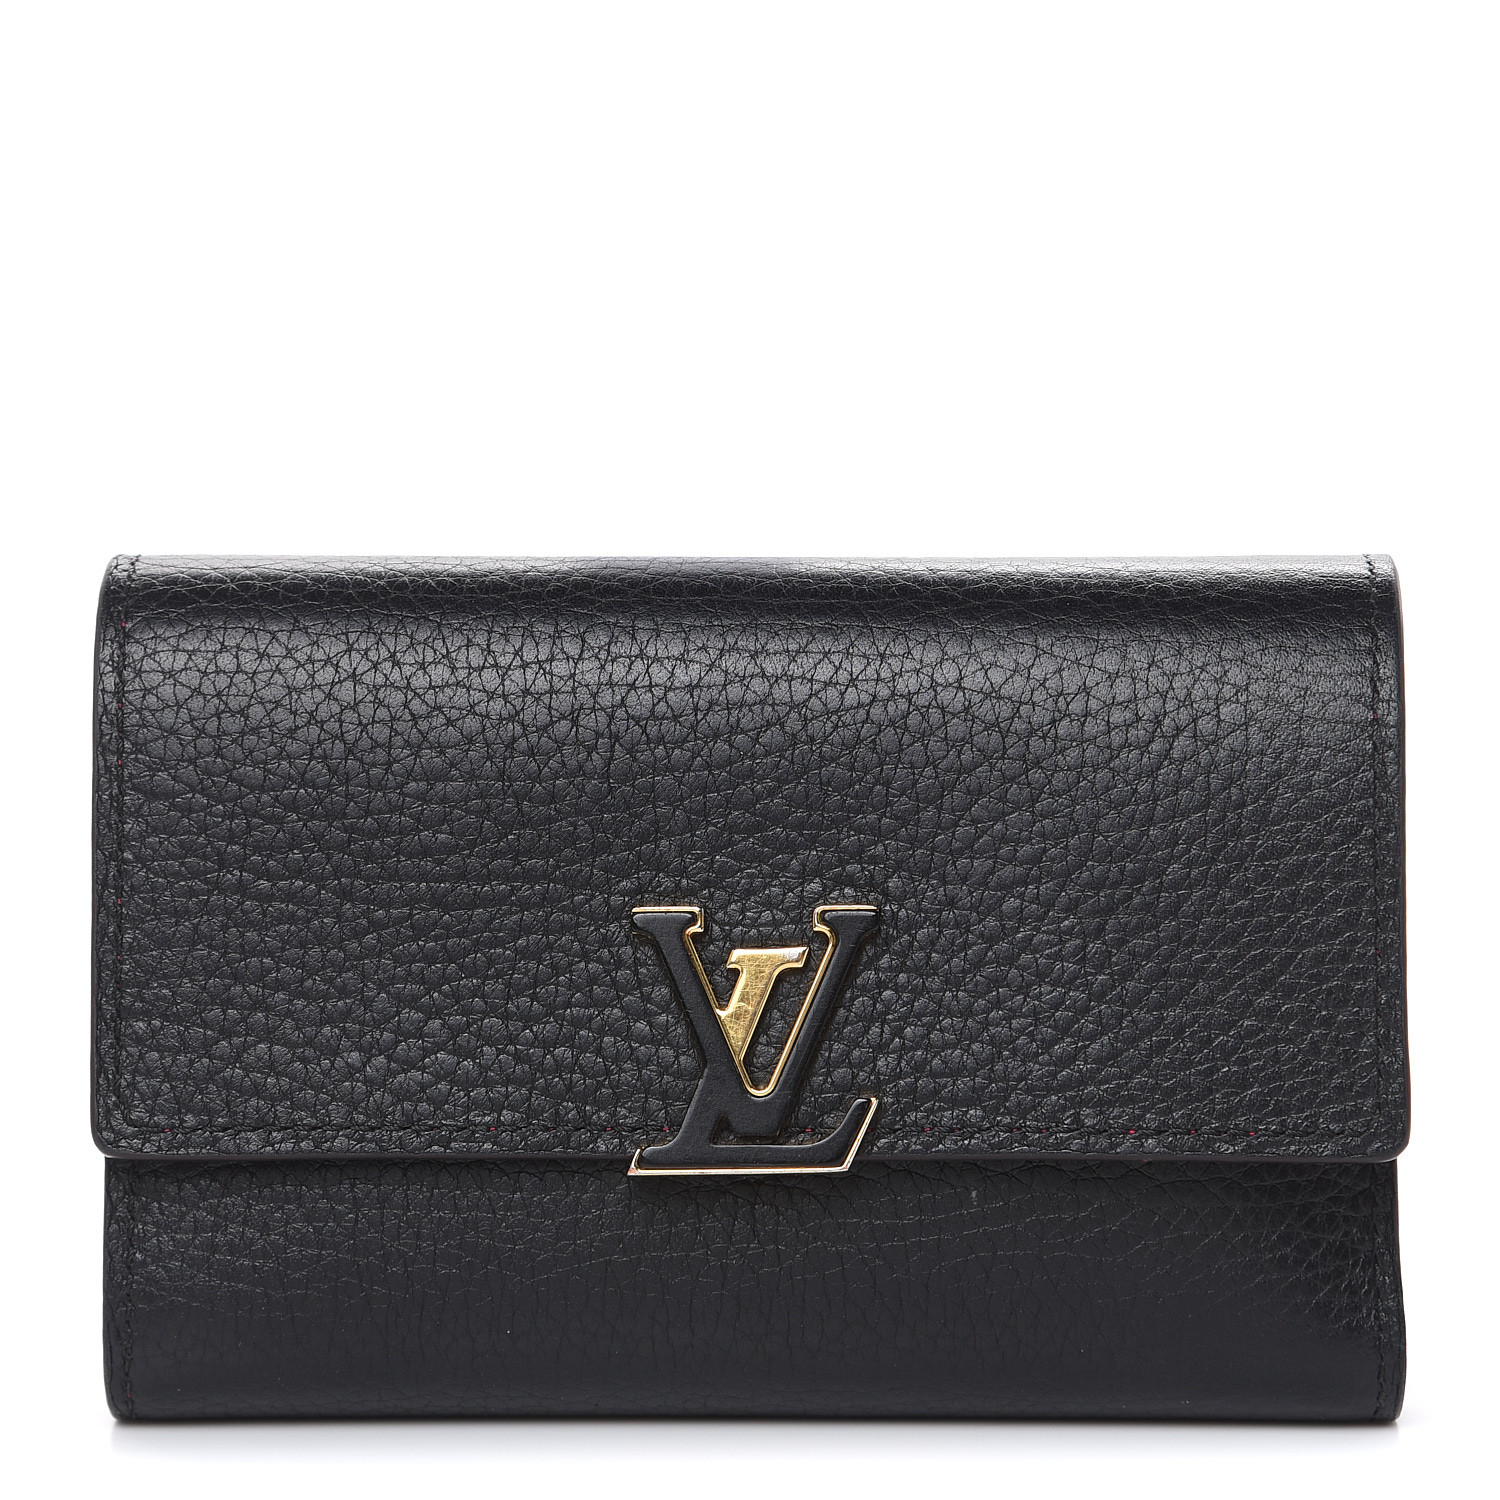 LOUIS VUITTON Taurillon Capucines Compact Wallet Black 476008